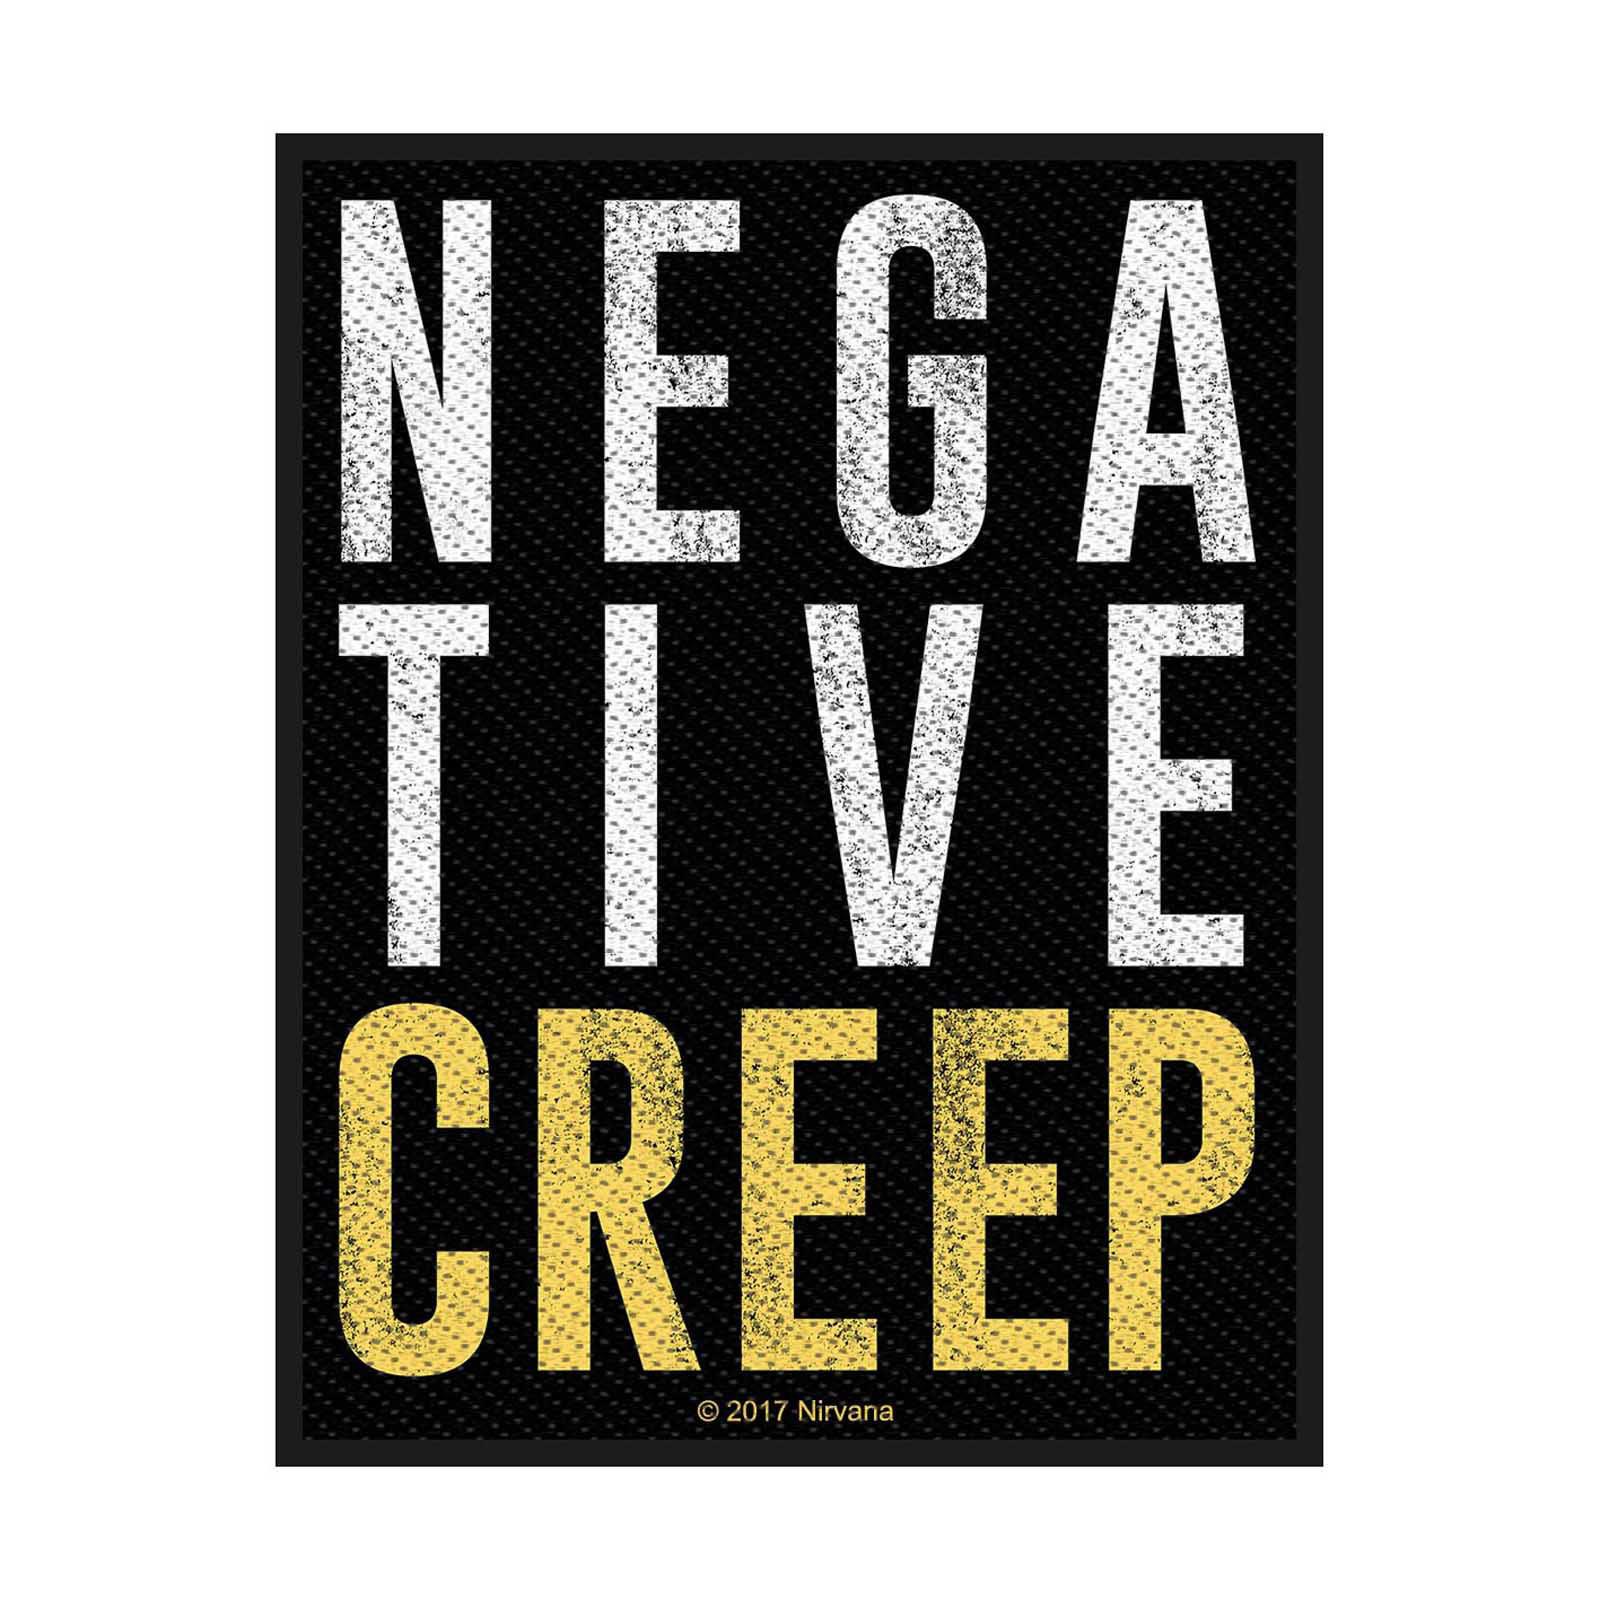 (ニルヴァーナ) Nirvana オフィシャル商品 Negative Creep ワッペン 織地 パッチ 【海外通販】